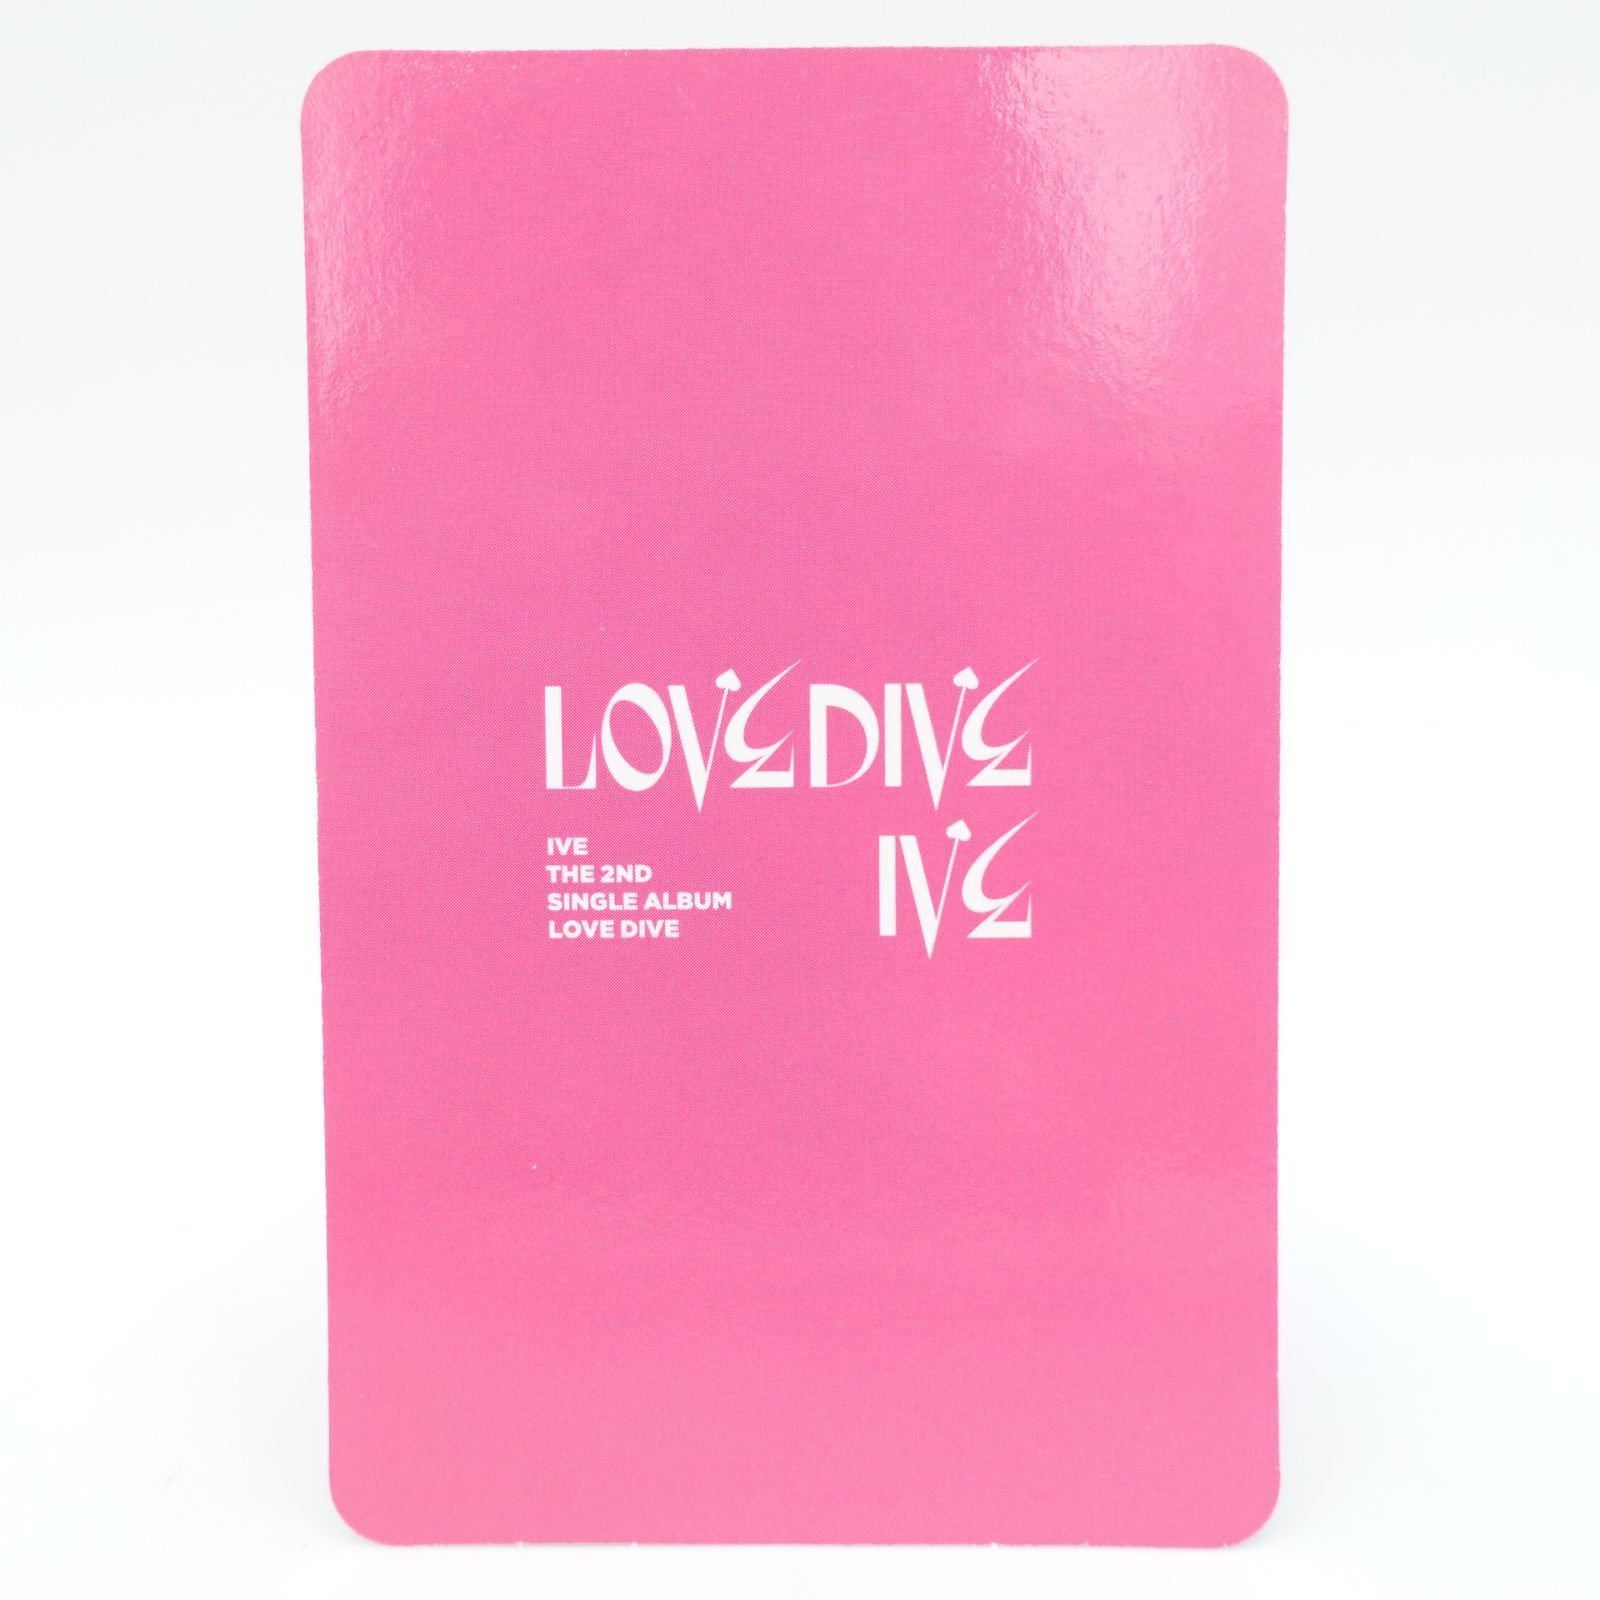 IVE アイヴ レイ REI 2nd singlealbum LOVE DIVEトレカ フォト カード 